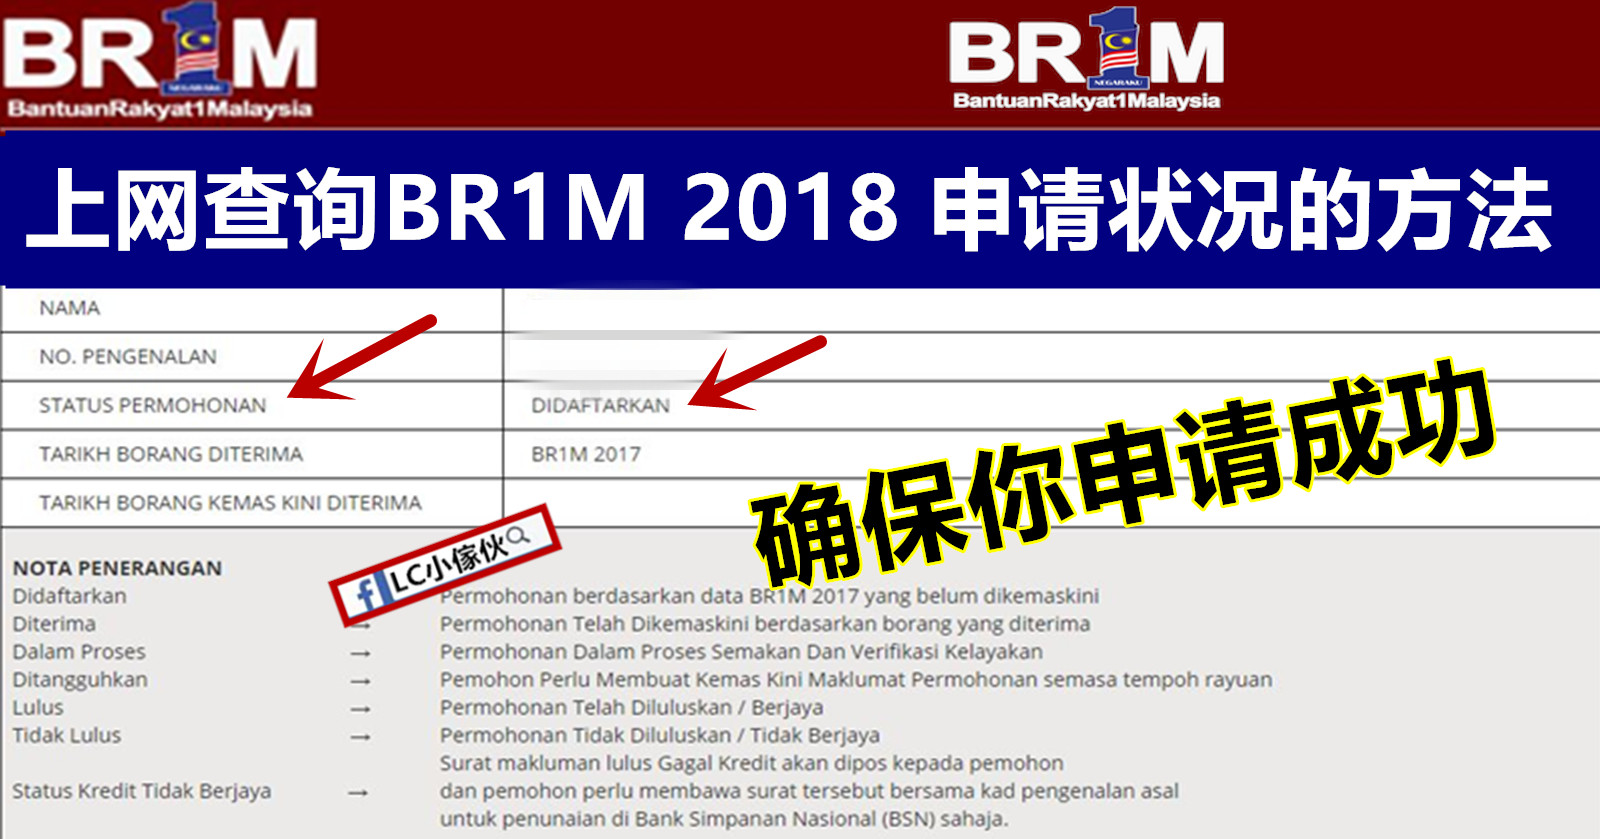 Br1m Check Status 2018 - BR1M Free